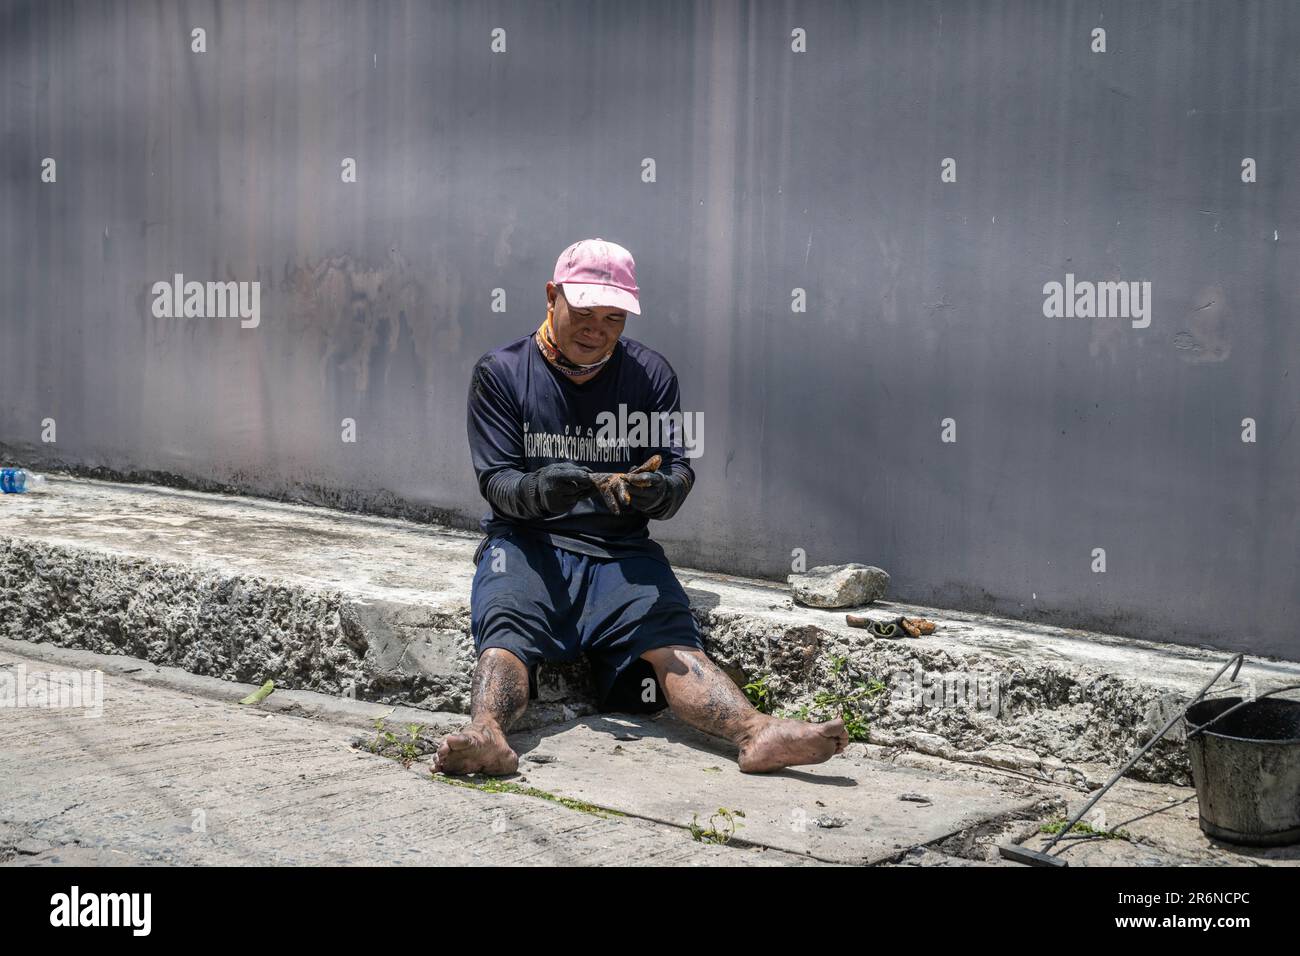 Ein thailändischer Gefangener macht eine Pause, nachdem er die Kanalisation in einer angrenzenden Straße der Lad Prao Road in Bangkok entstaut hat. Die Reduzierung der Strafen durch Arbeit ist eine der Richtlinien der Zusammenarbeit zwischen der Stadtverwaltung von Bangkok und der Strafvollzugsbehörde, die darauf abzielt, die Überbelegung von Gefängnissen im ganzen Land zu verringern, Häftlingen zu ermöglichen, ein Einkommen zu verdienen, bevor sie entlassen werden, und hilft bei den Folgen Der wiederkehrenden Überschwemmungen in der thailändischen Hauptstadt zur Monsunzeit. Stockfoto